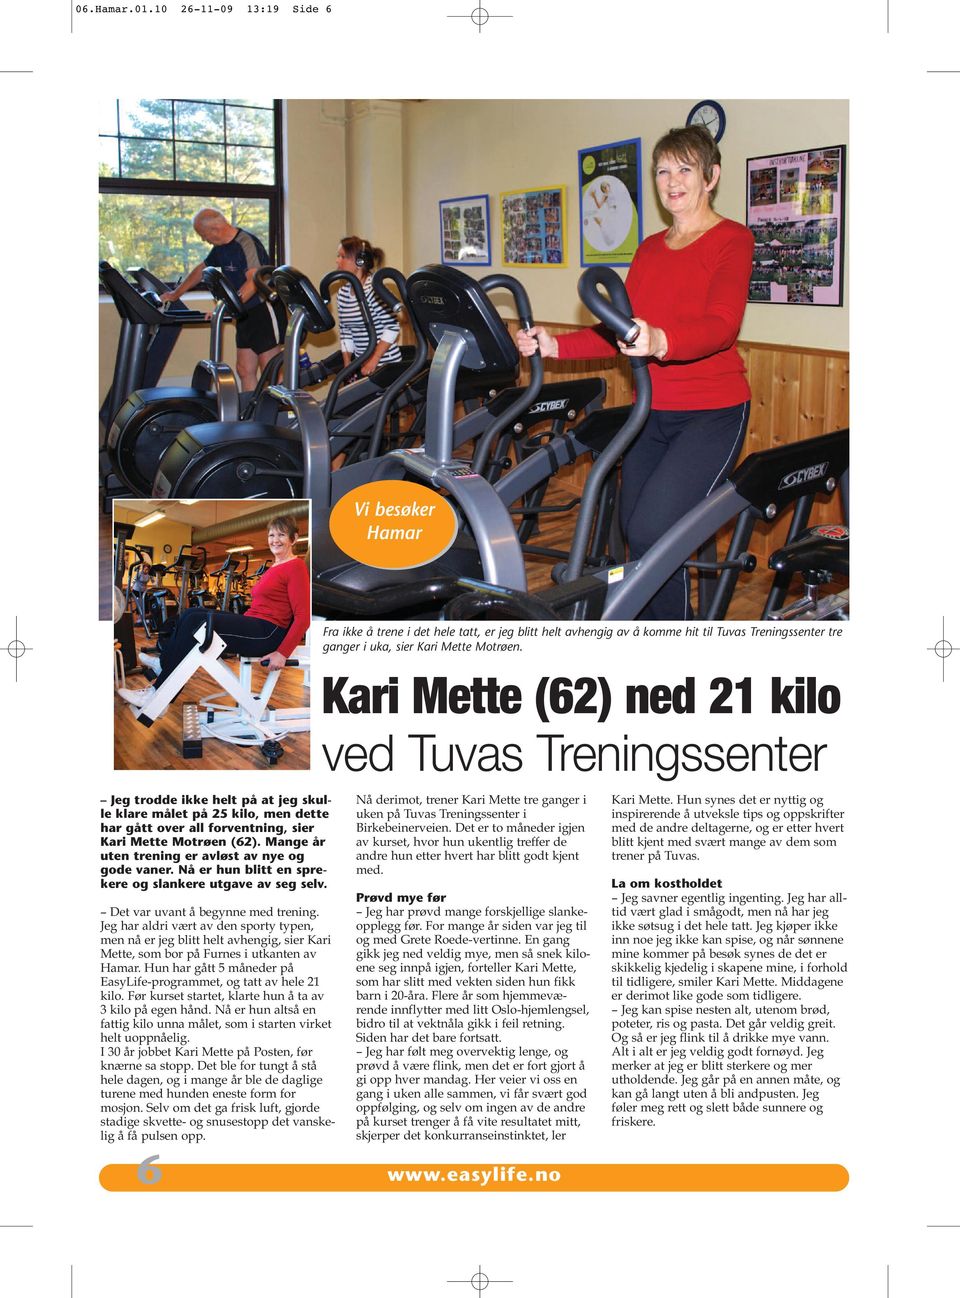 Jeg har aldri vært av den sporty typen, men nå er jeg blitt helt avhengig, sier Kari Mette, som bor på Furnes i utkanten av Hamar.